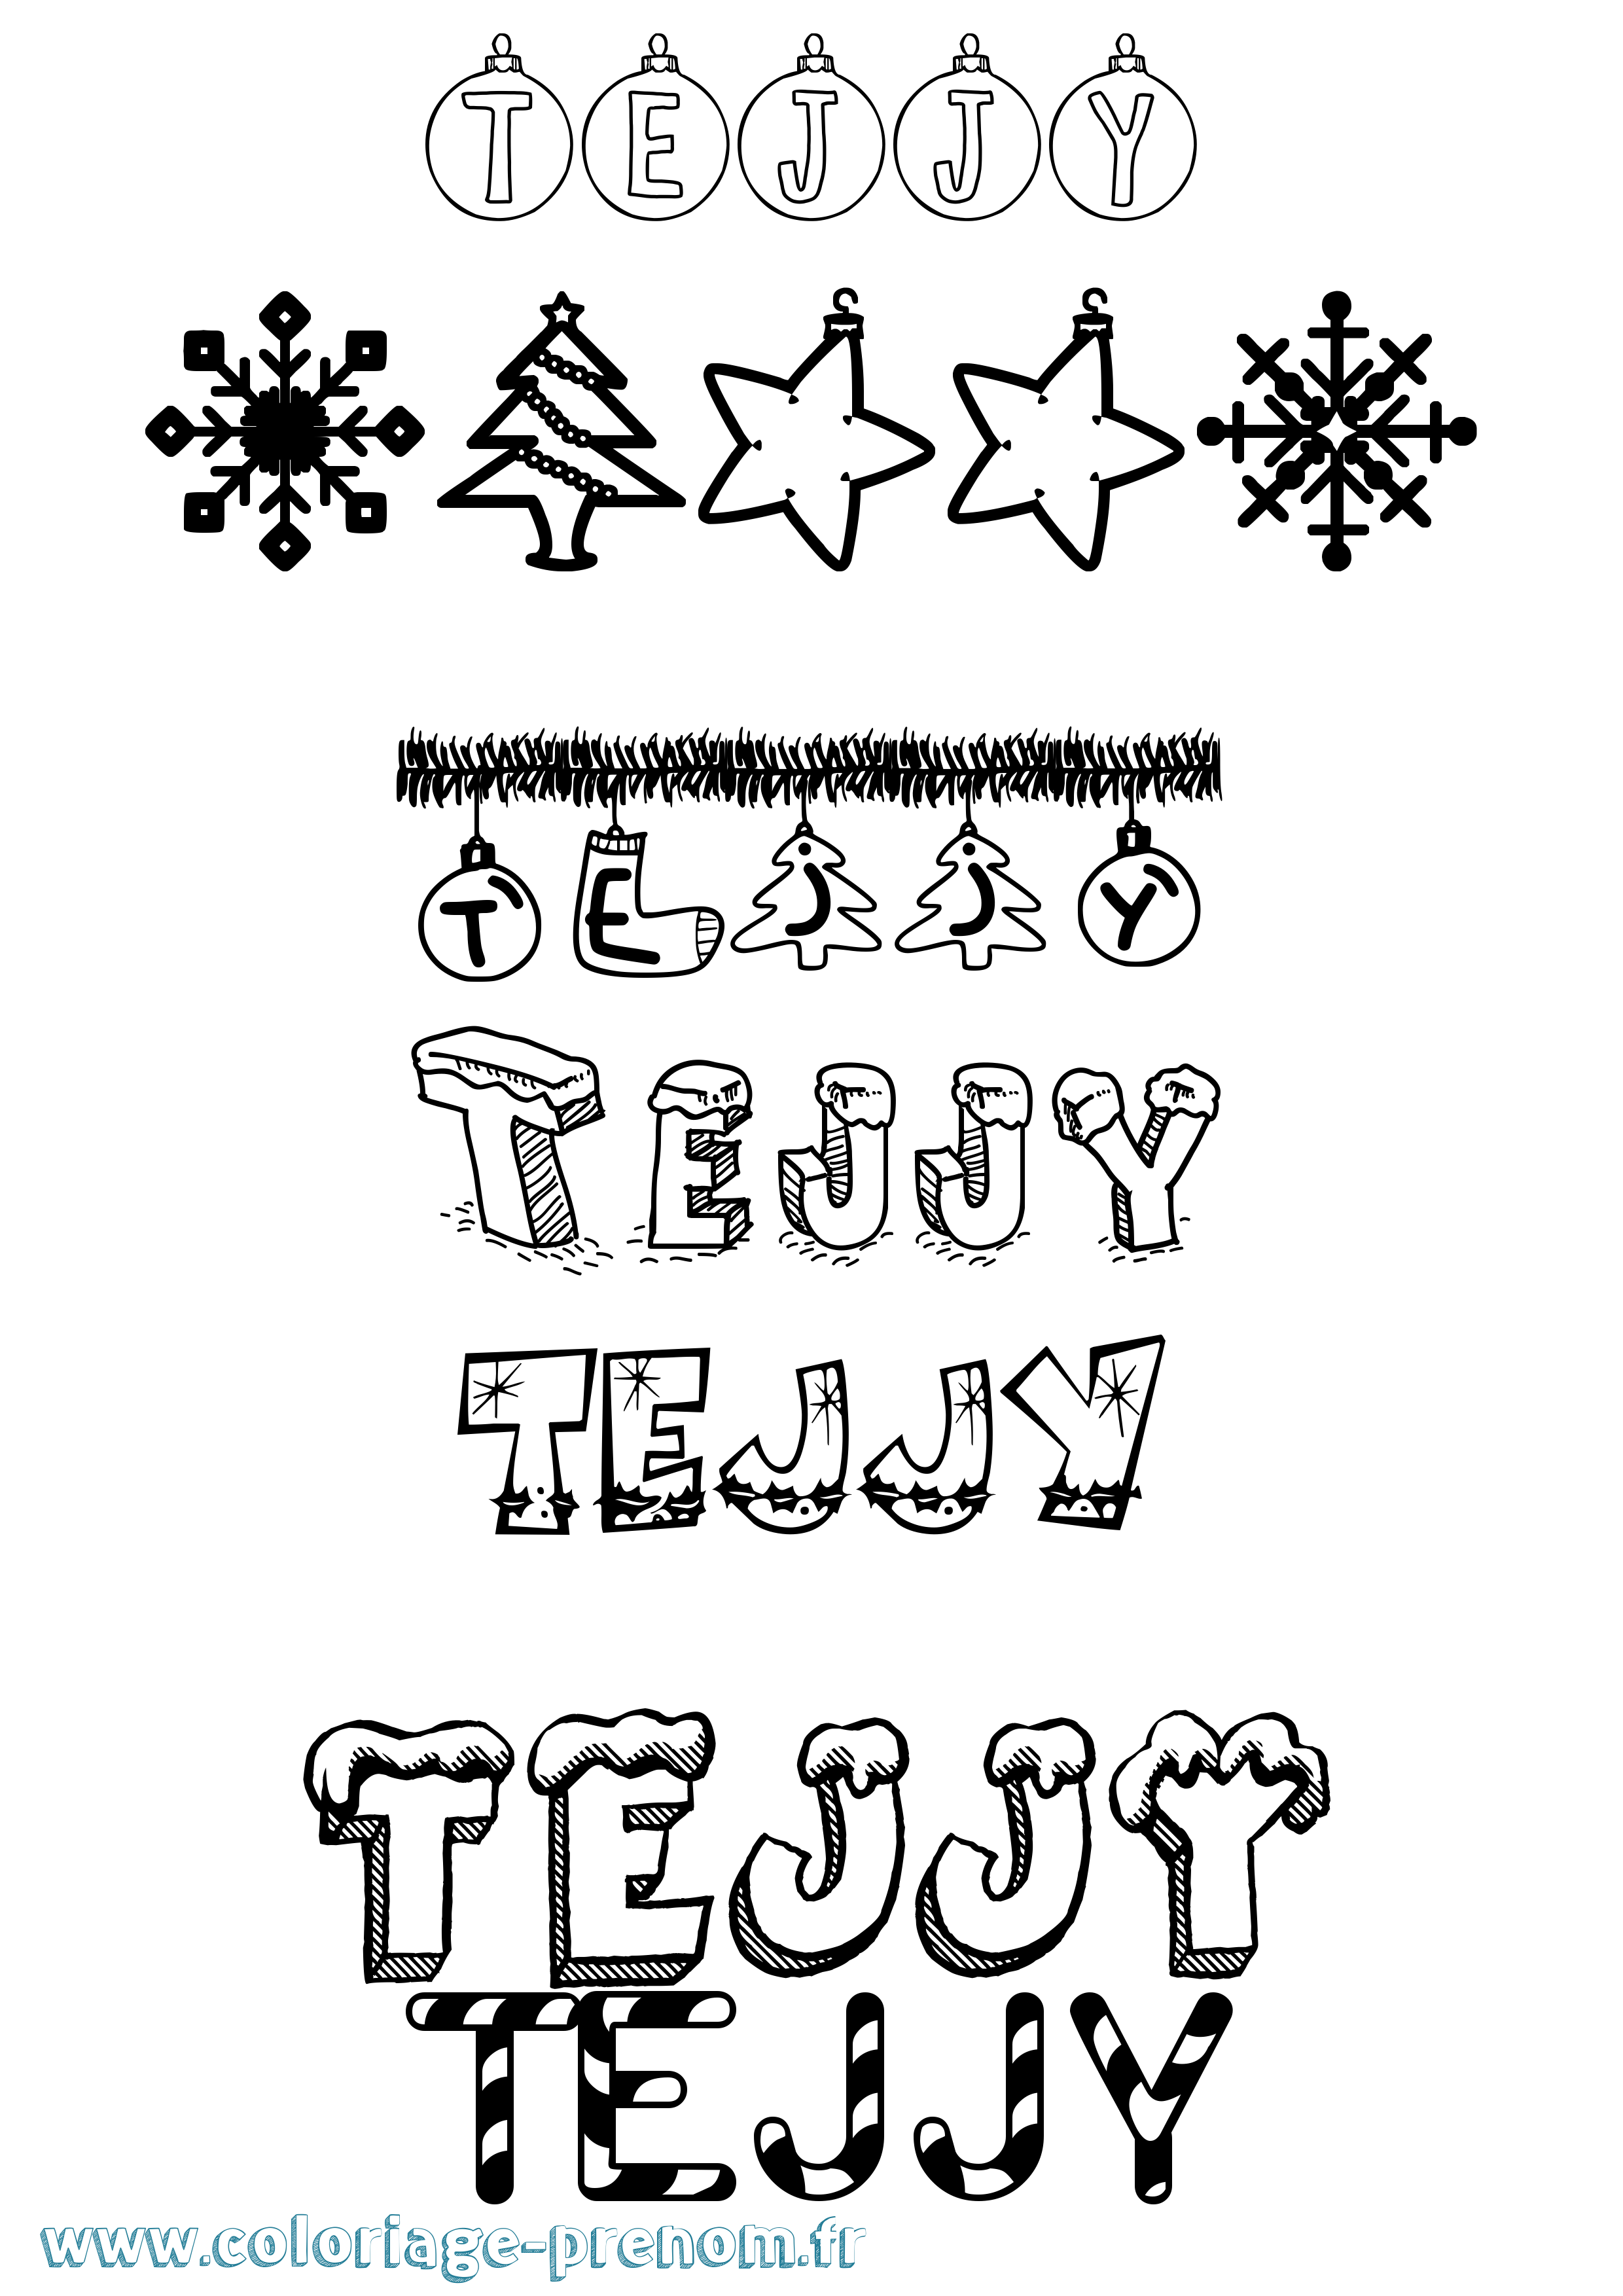 Coloriage prénom Tejjy Noël